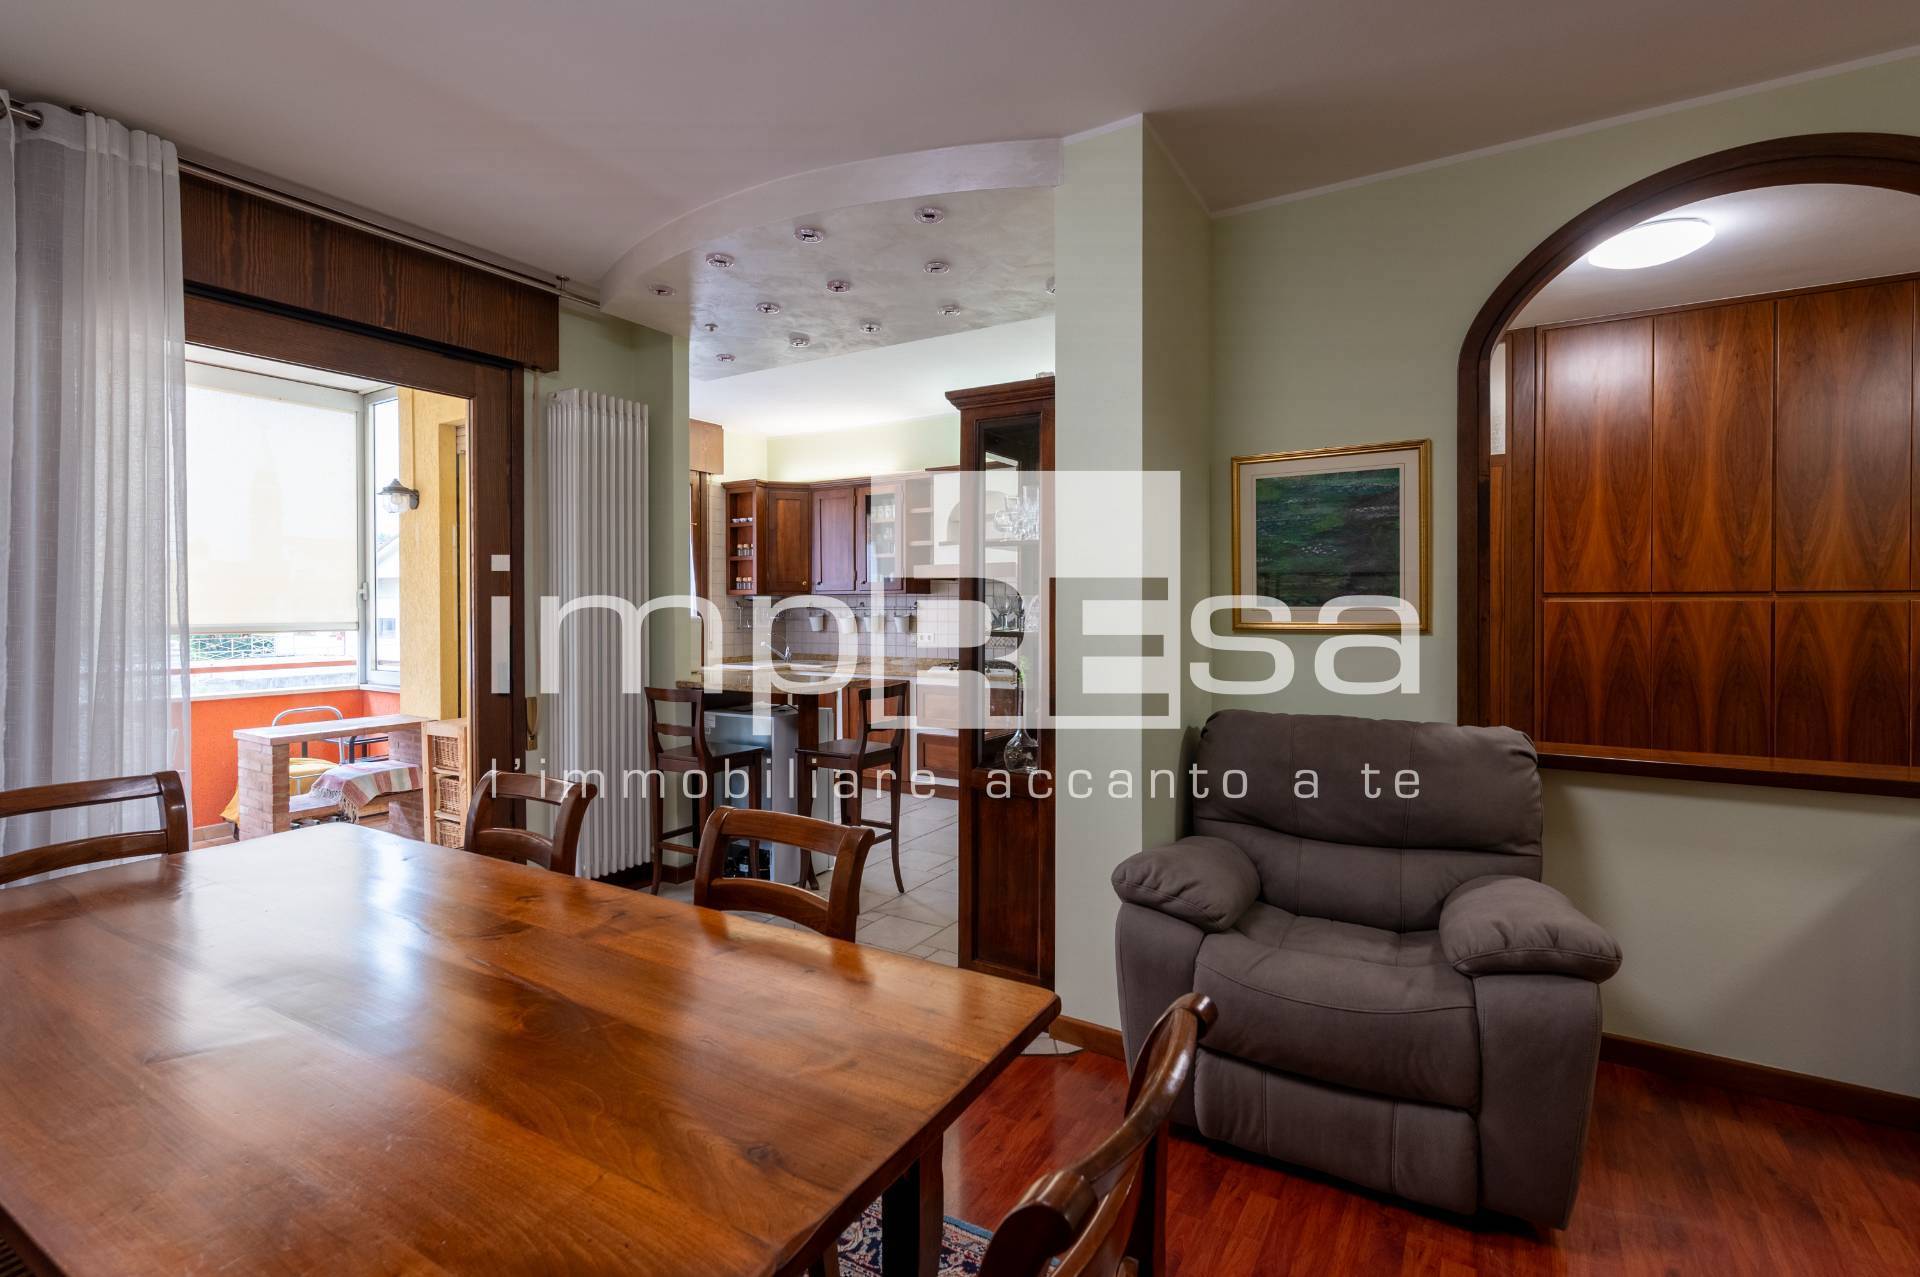 Appartamento in vendita a Salgareda, 4 locali, zona Località: Centro, prezzo € 165.000 | PortaleAgenzieImmobiliari.it